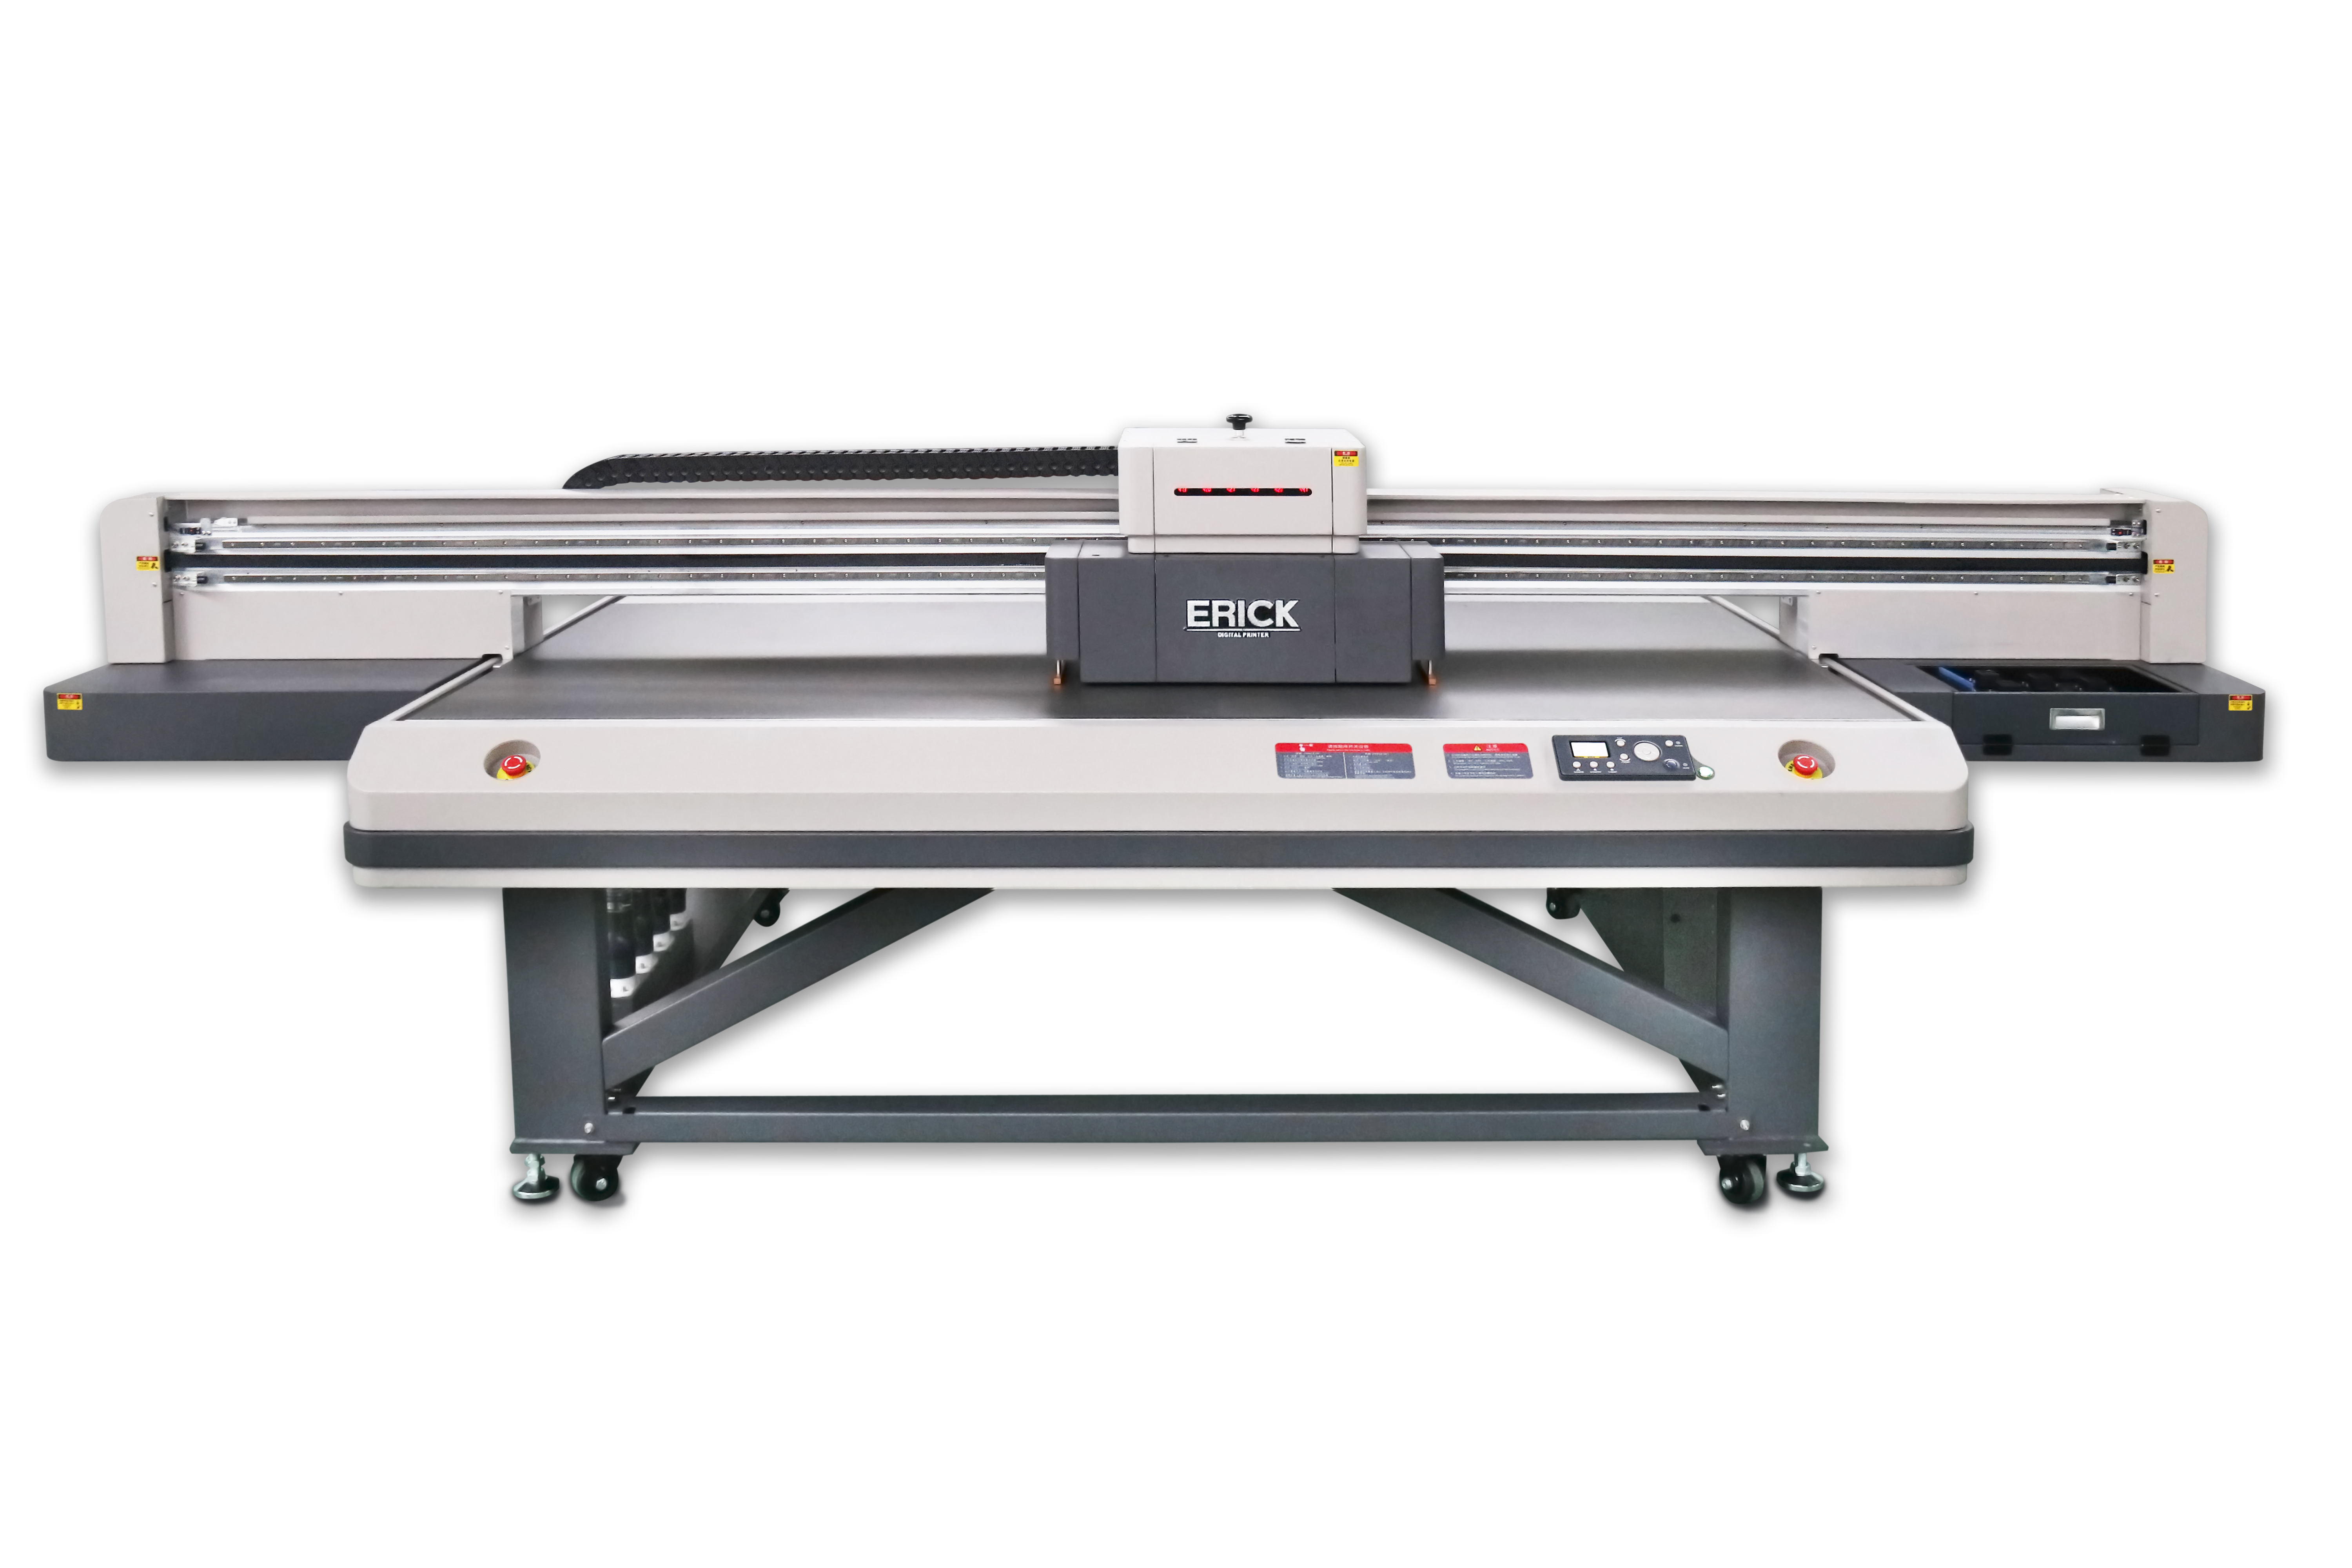 Large Format Flatbed UV Printer UV2513 Flatbed Printer Machine Manufacturer Supplier Featured Image